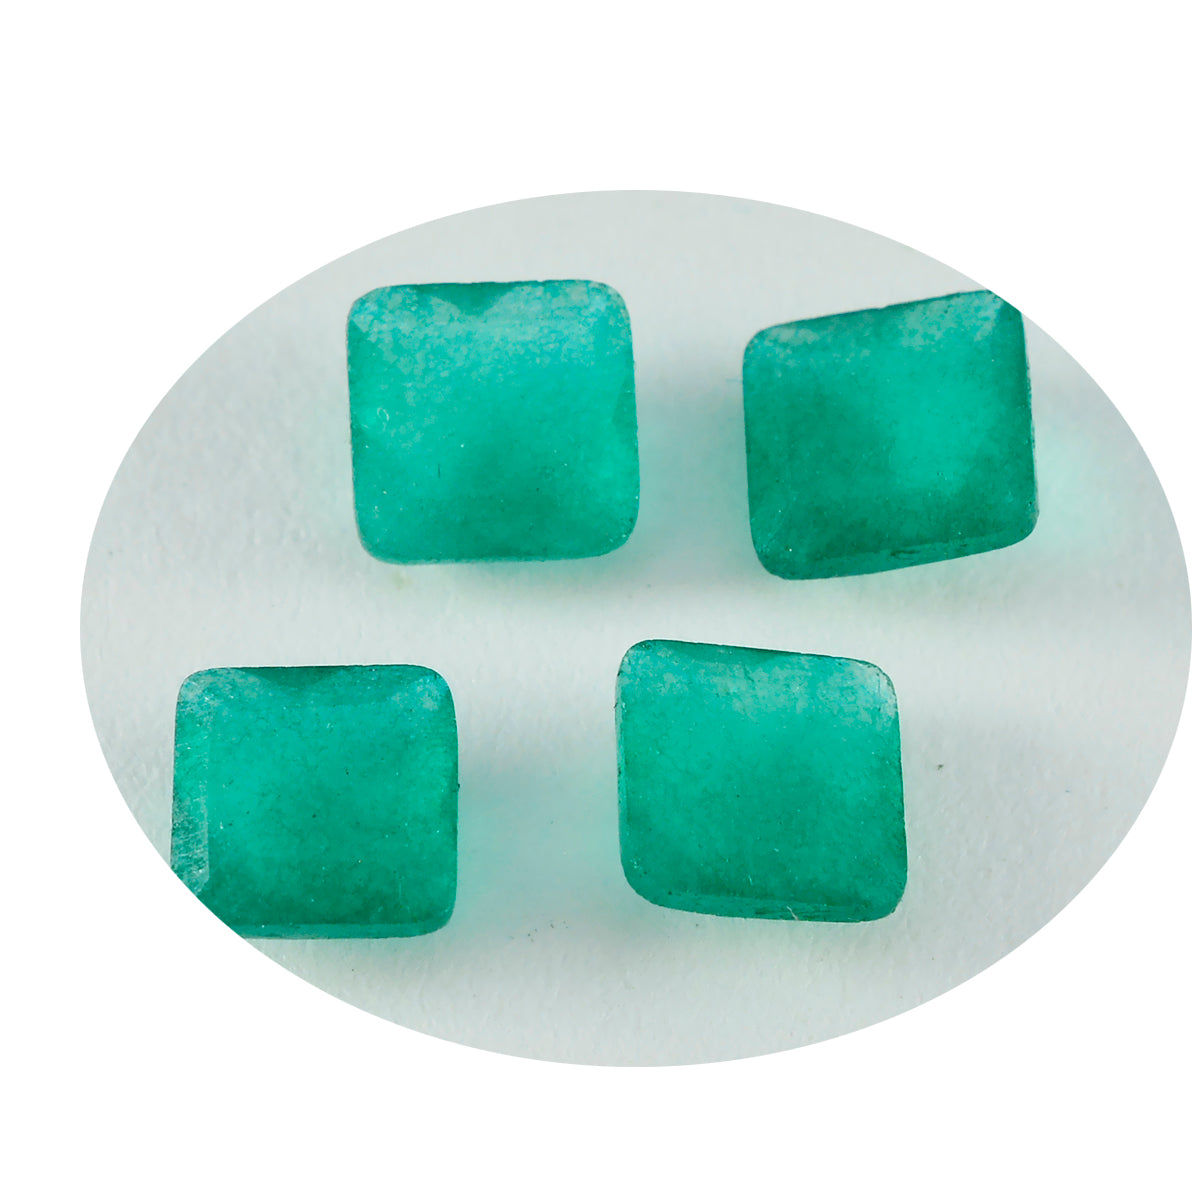 riyogems 1 шт. натуральная зеленая яшма ограненная 14x14 мм квадратная форма качество ААА драгоценные камни